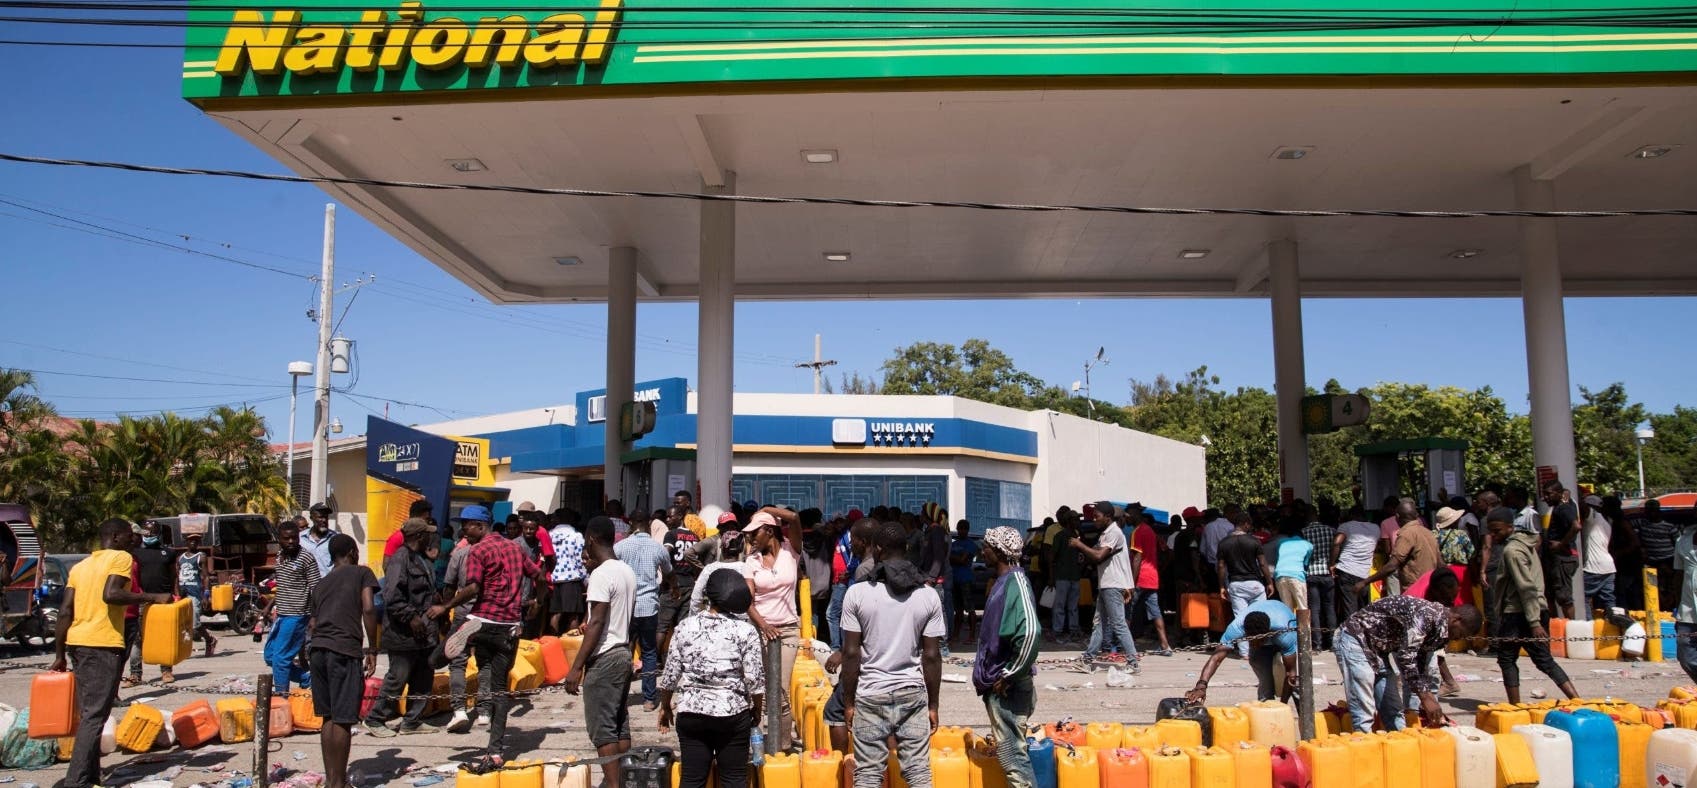 Primer ministro de Haití anuncia alza de combustibles en medio de crisis